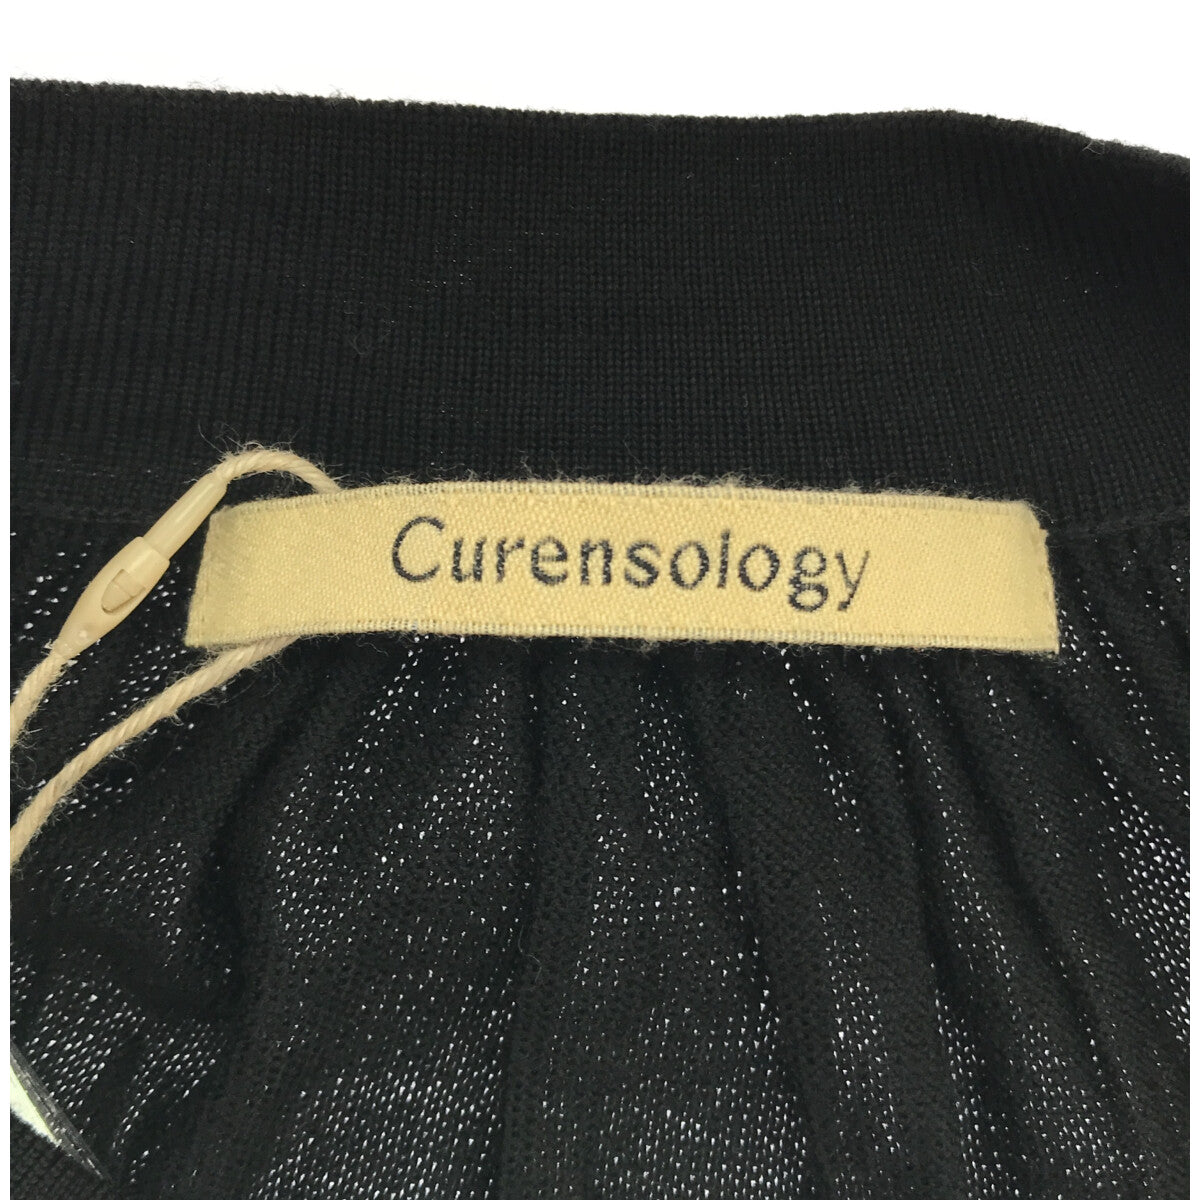 Curensology / カレンソロジー | Wロングギャザー ニットワンピース | F |